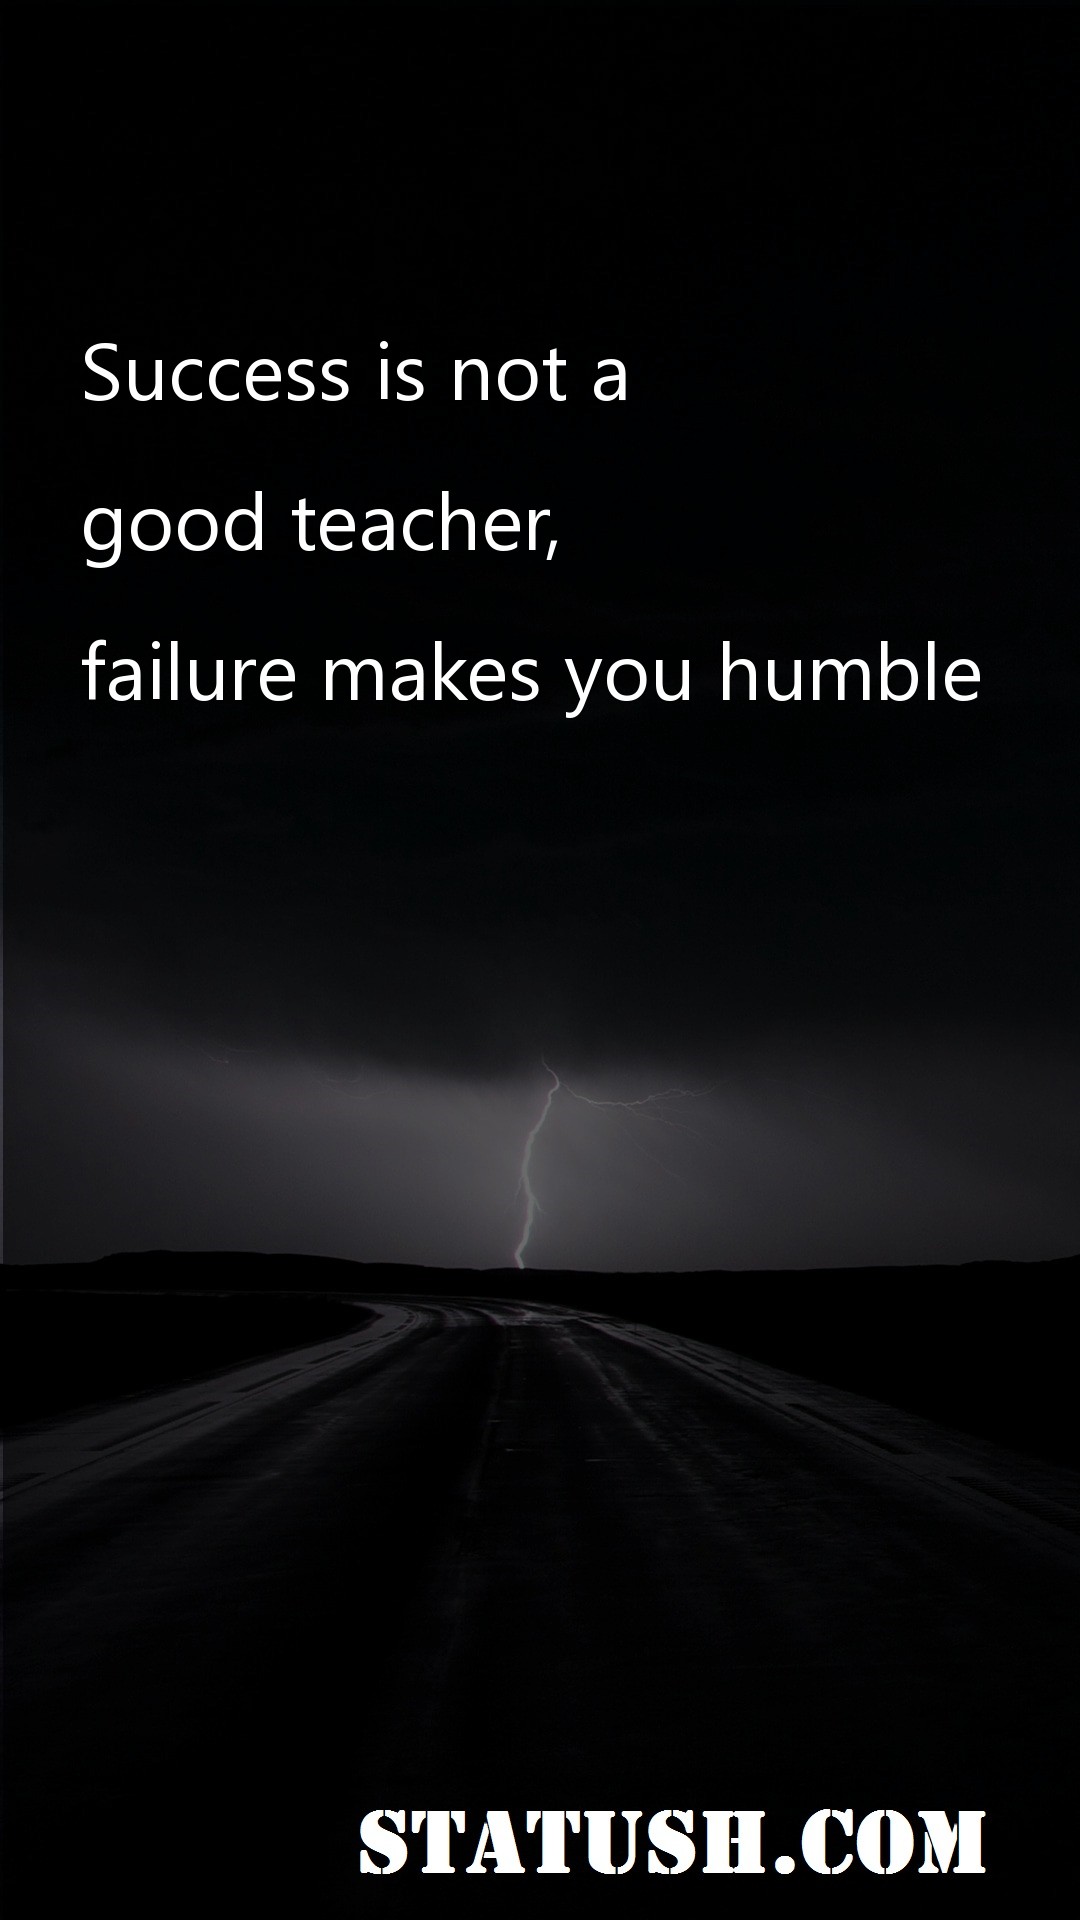 Success is not a good teacher